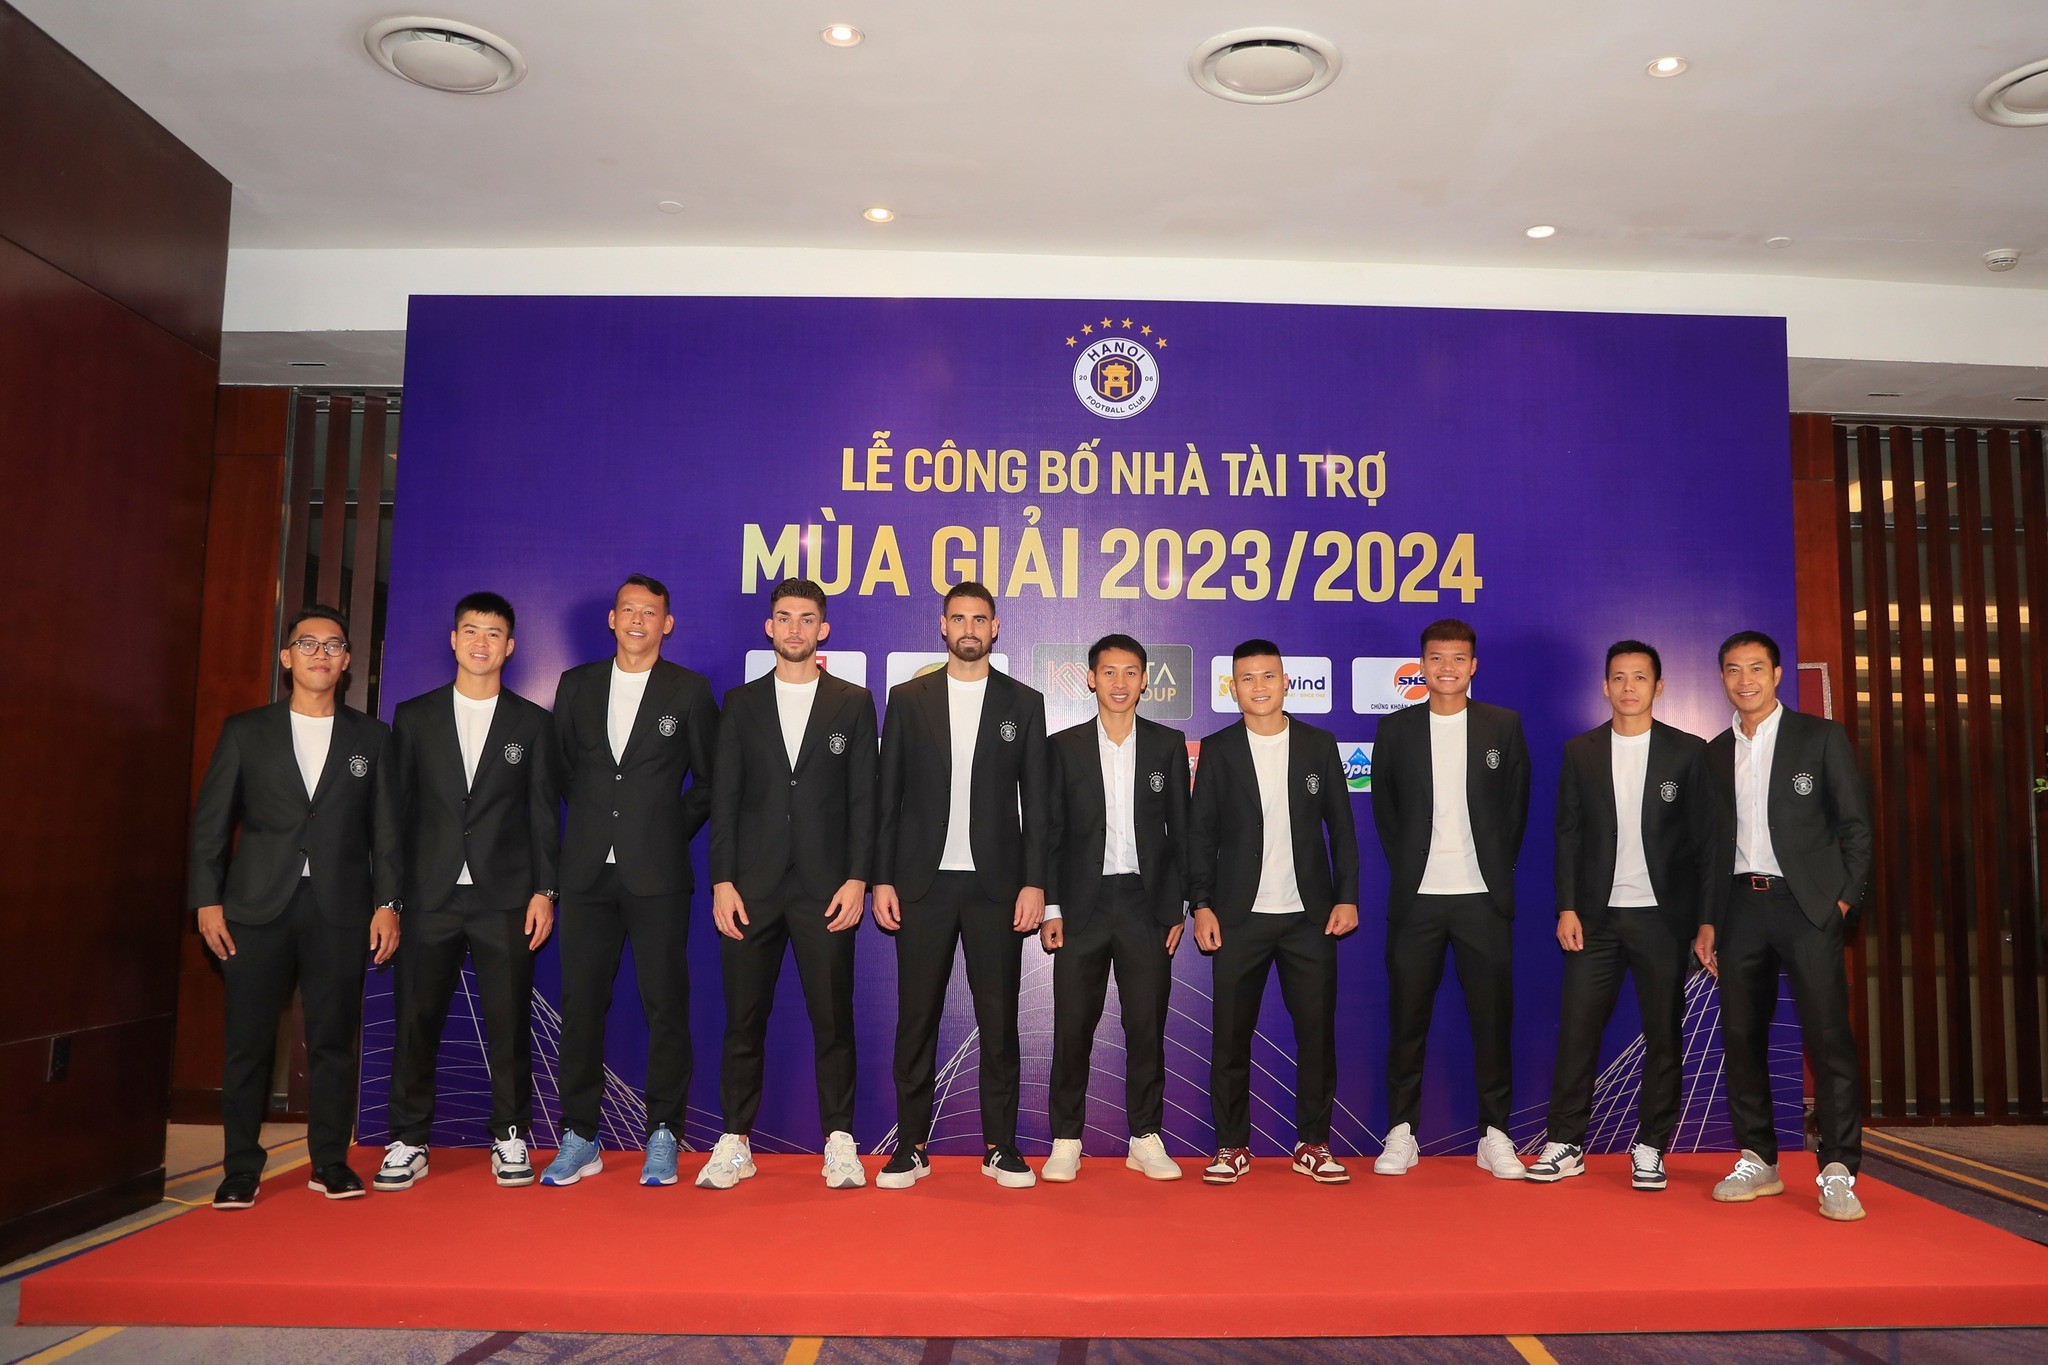 Các cầu thủ Hà Nội FC trong buổi lễ xuất quân